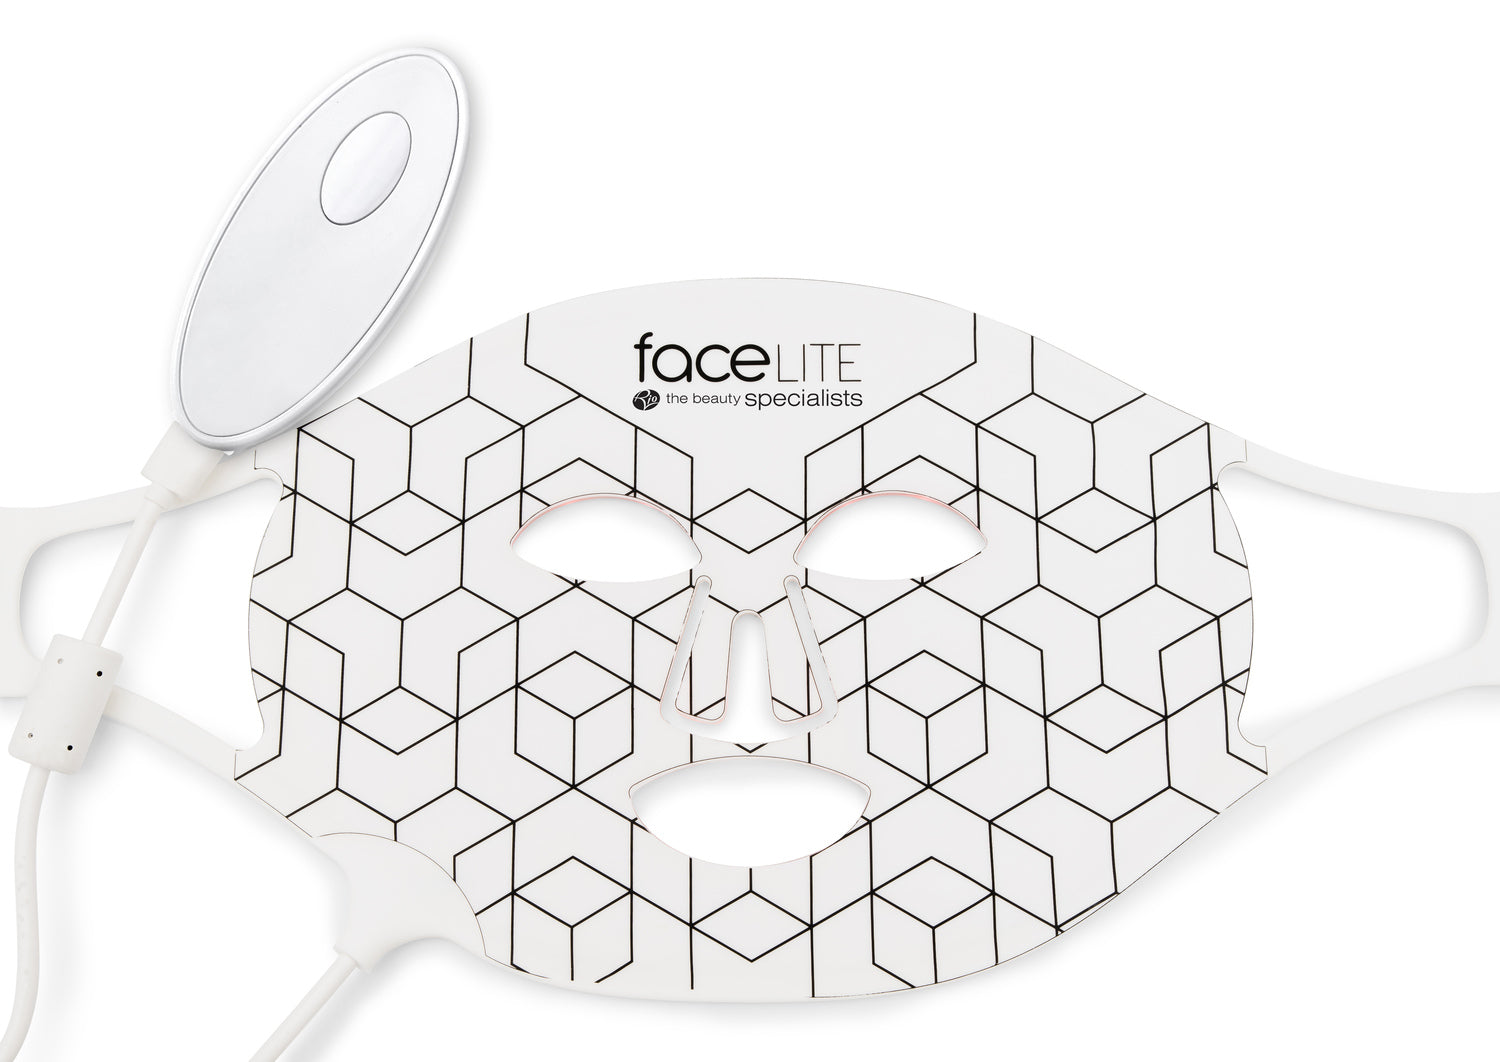 faceLITE maschera per il viso a LED per potenziare la bellezza